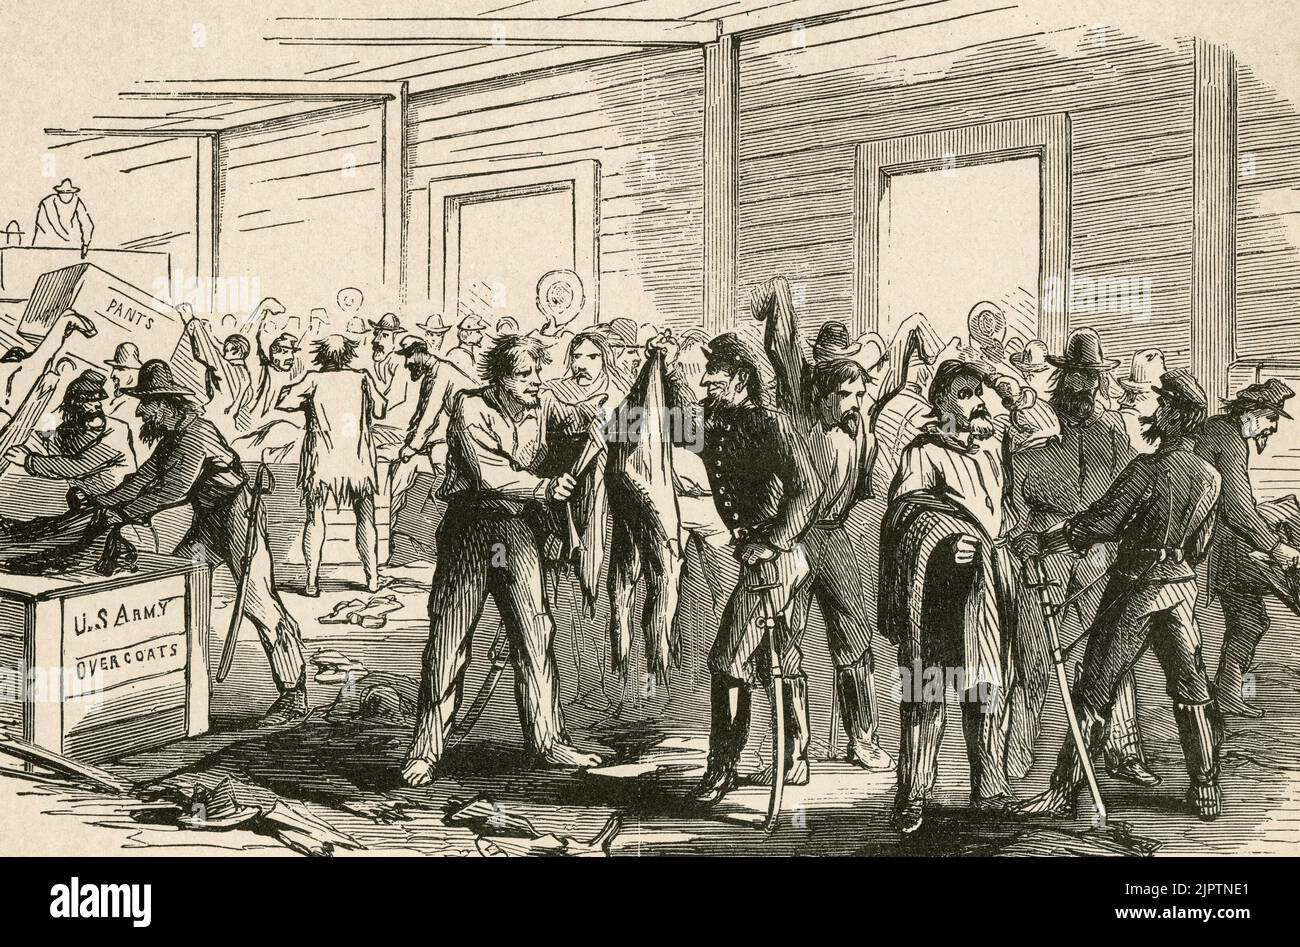 Les rebelles échangent leurs chiffons contre des manteaux de l'armée américaine à Chambersburg, en Pennsylvanie, en 1862, pendant la guerre de Sécession Banque D'Images